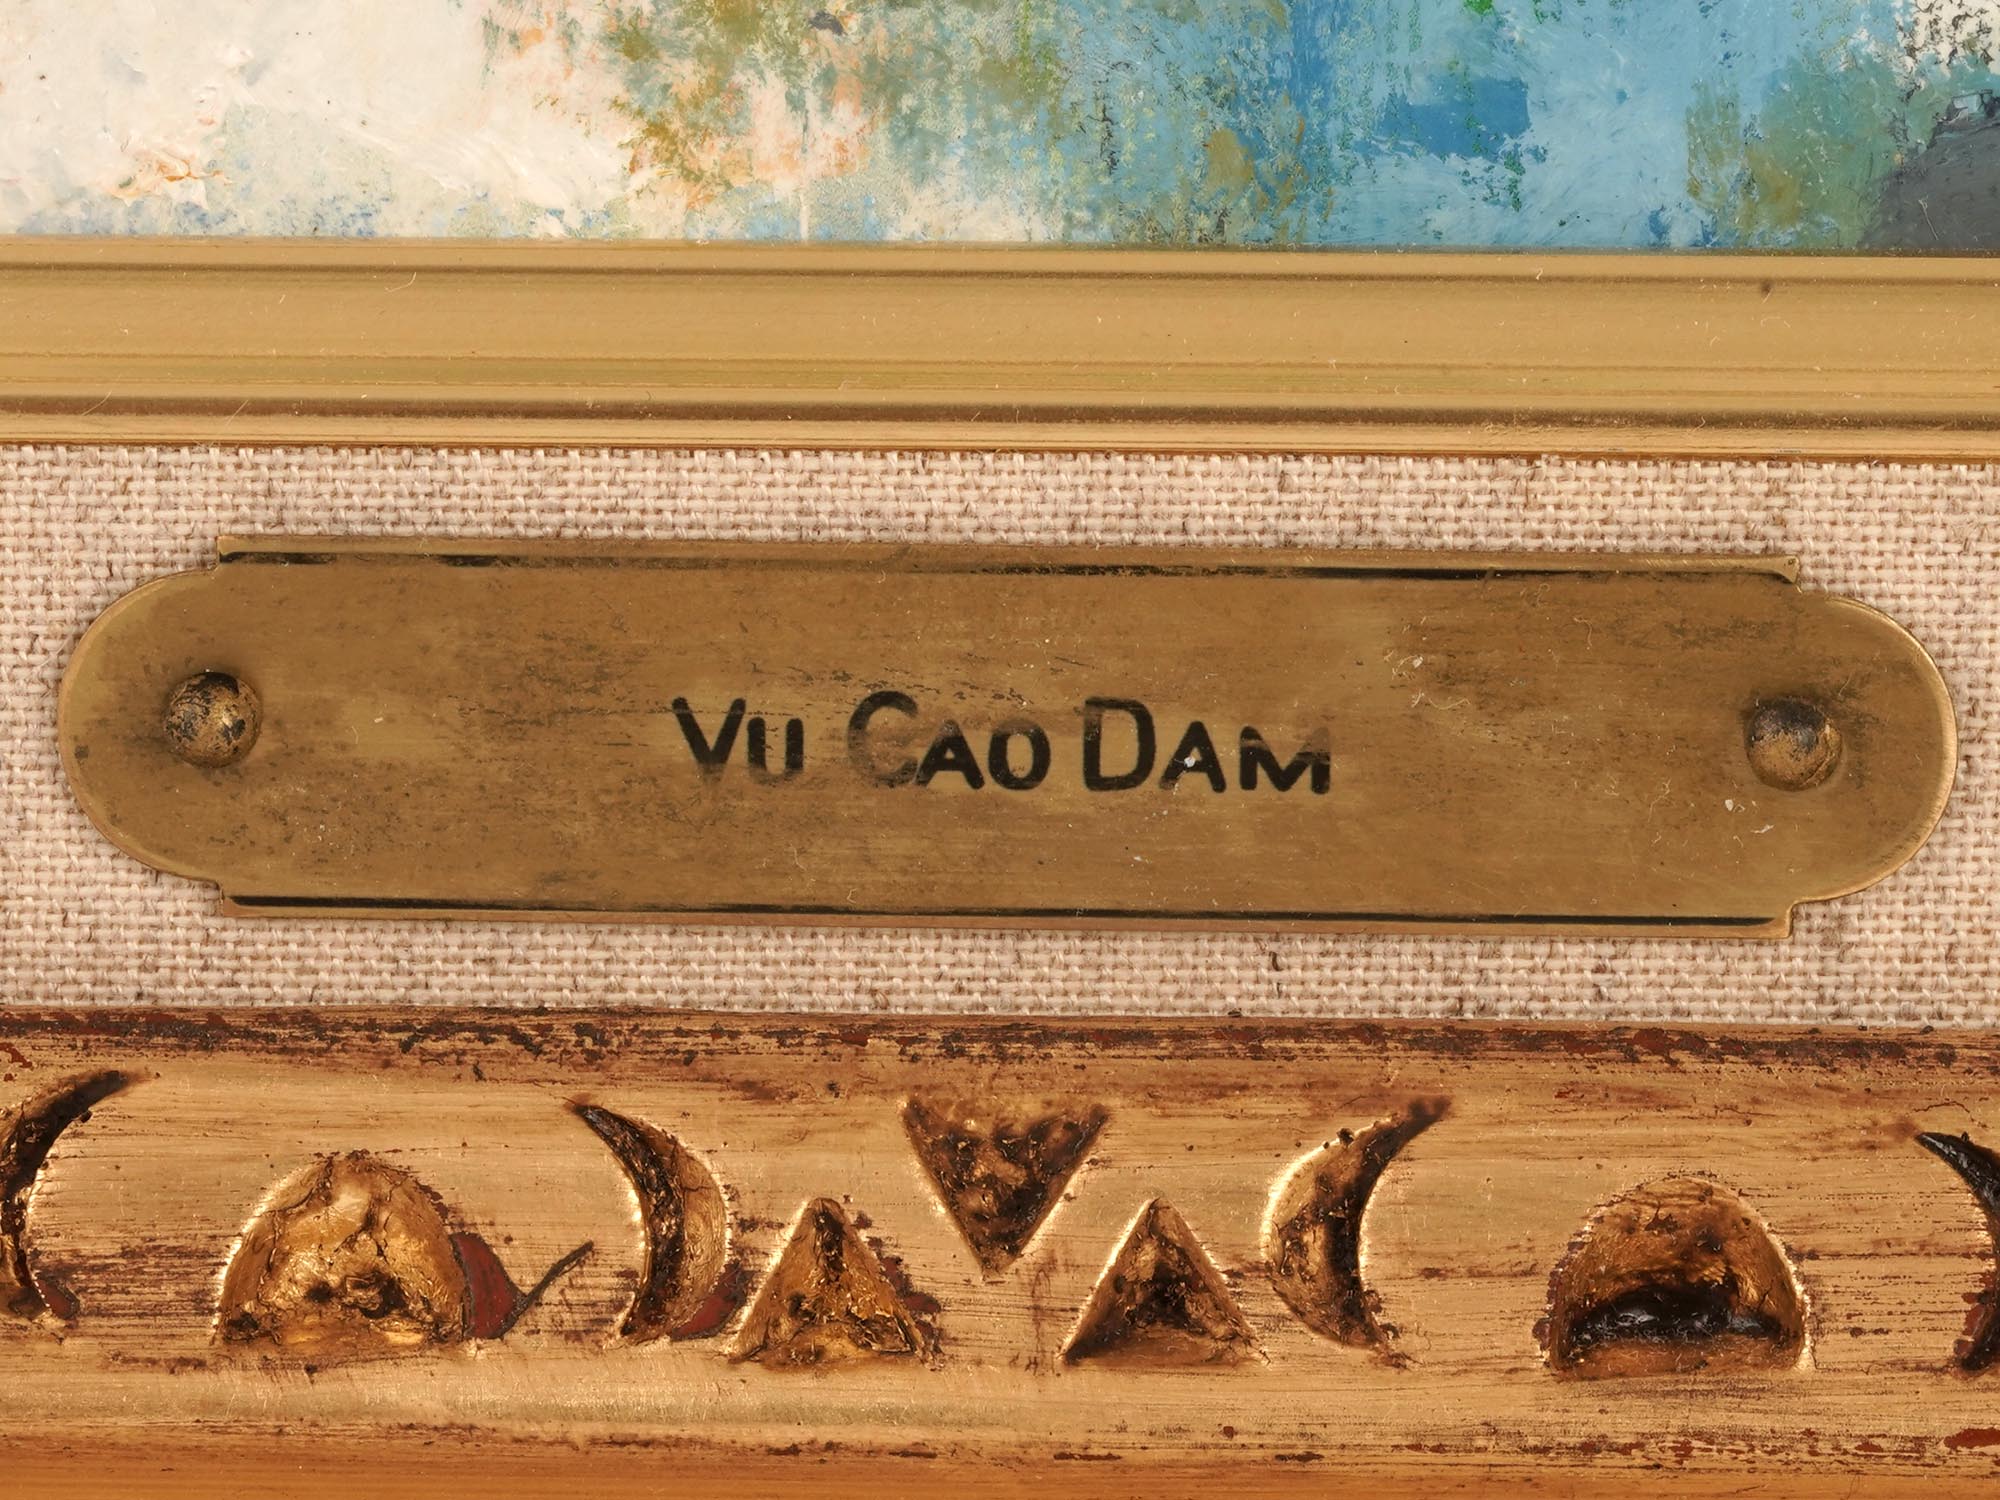 VIETNAMESE PORTRAIT OIL PAINTING BY VU CAO DAM PIC-2